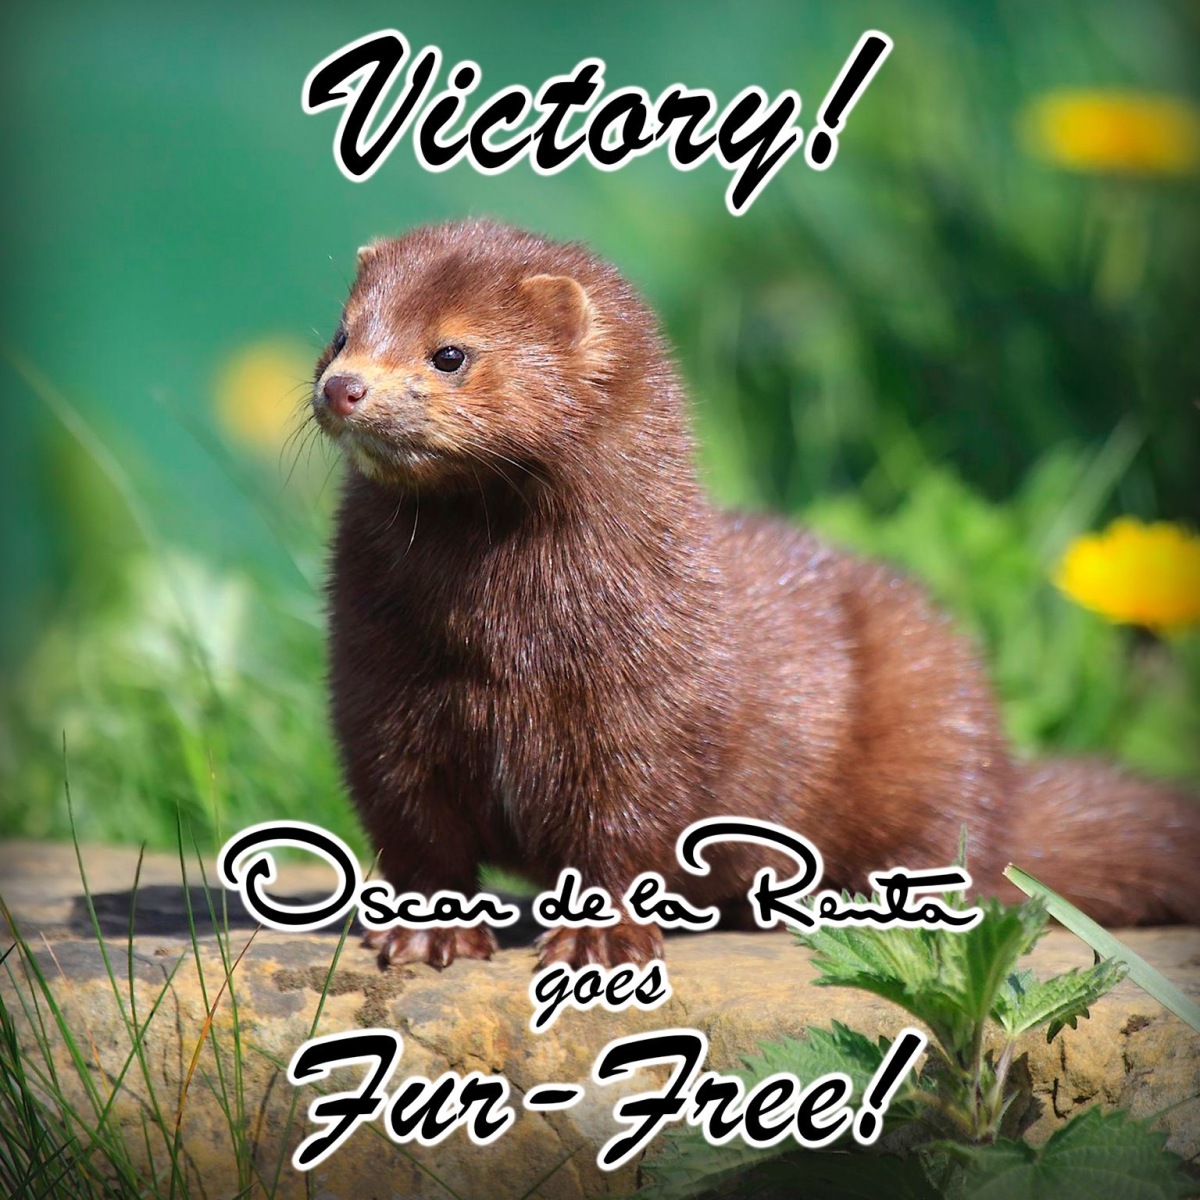 VICTORY! Oscar de la Renta is going fur free!